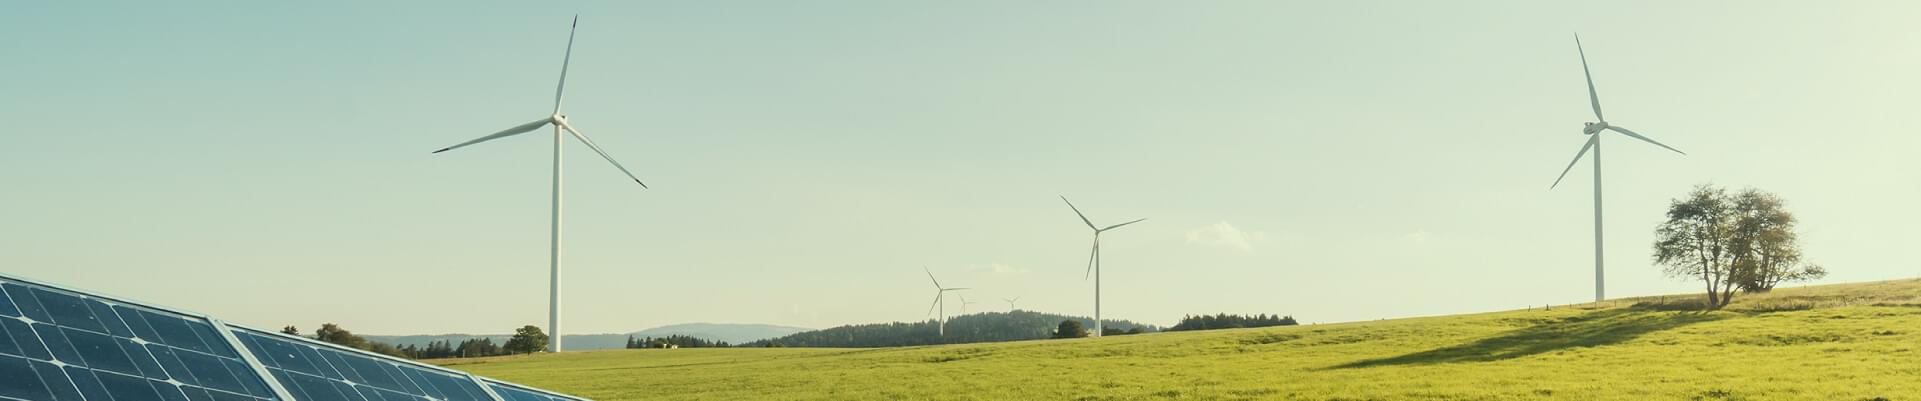 Tecnologia e sustentabilidade com foco na poupança - Yes Energy